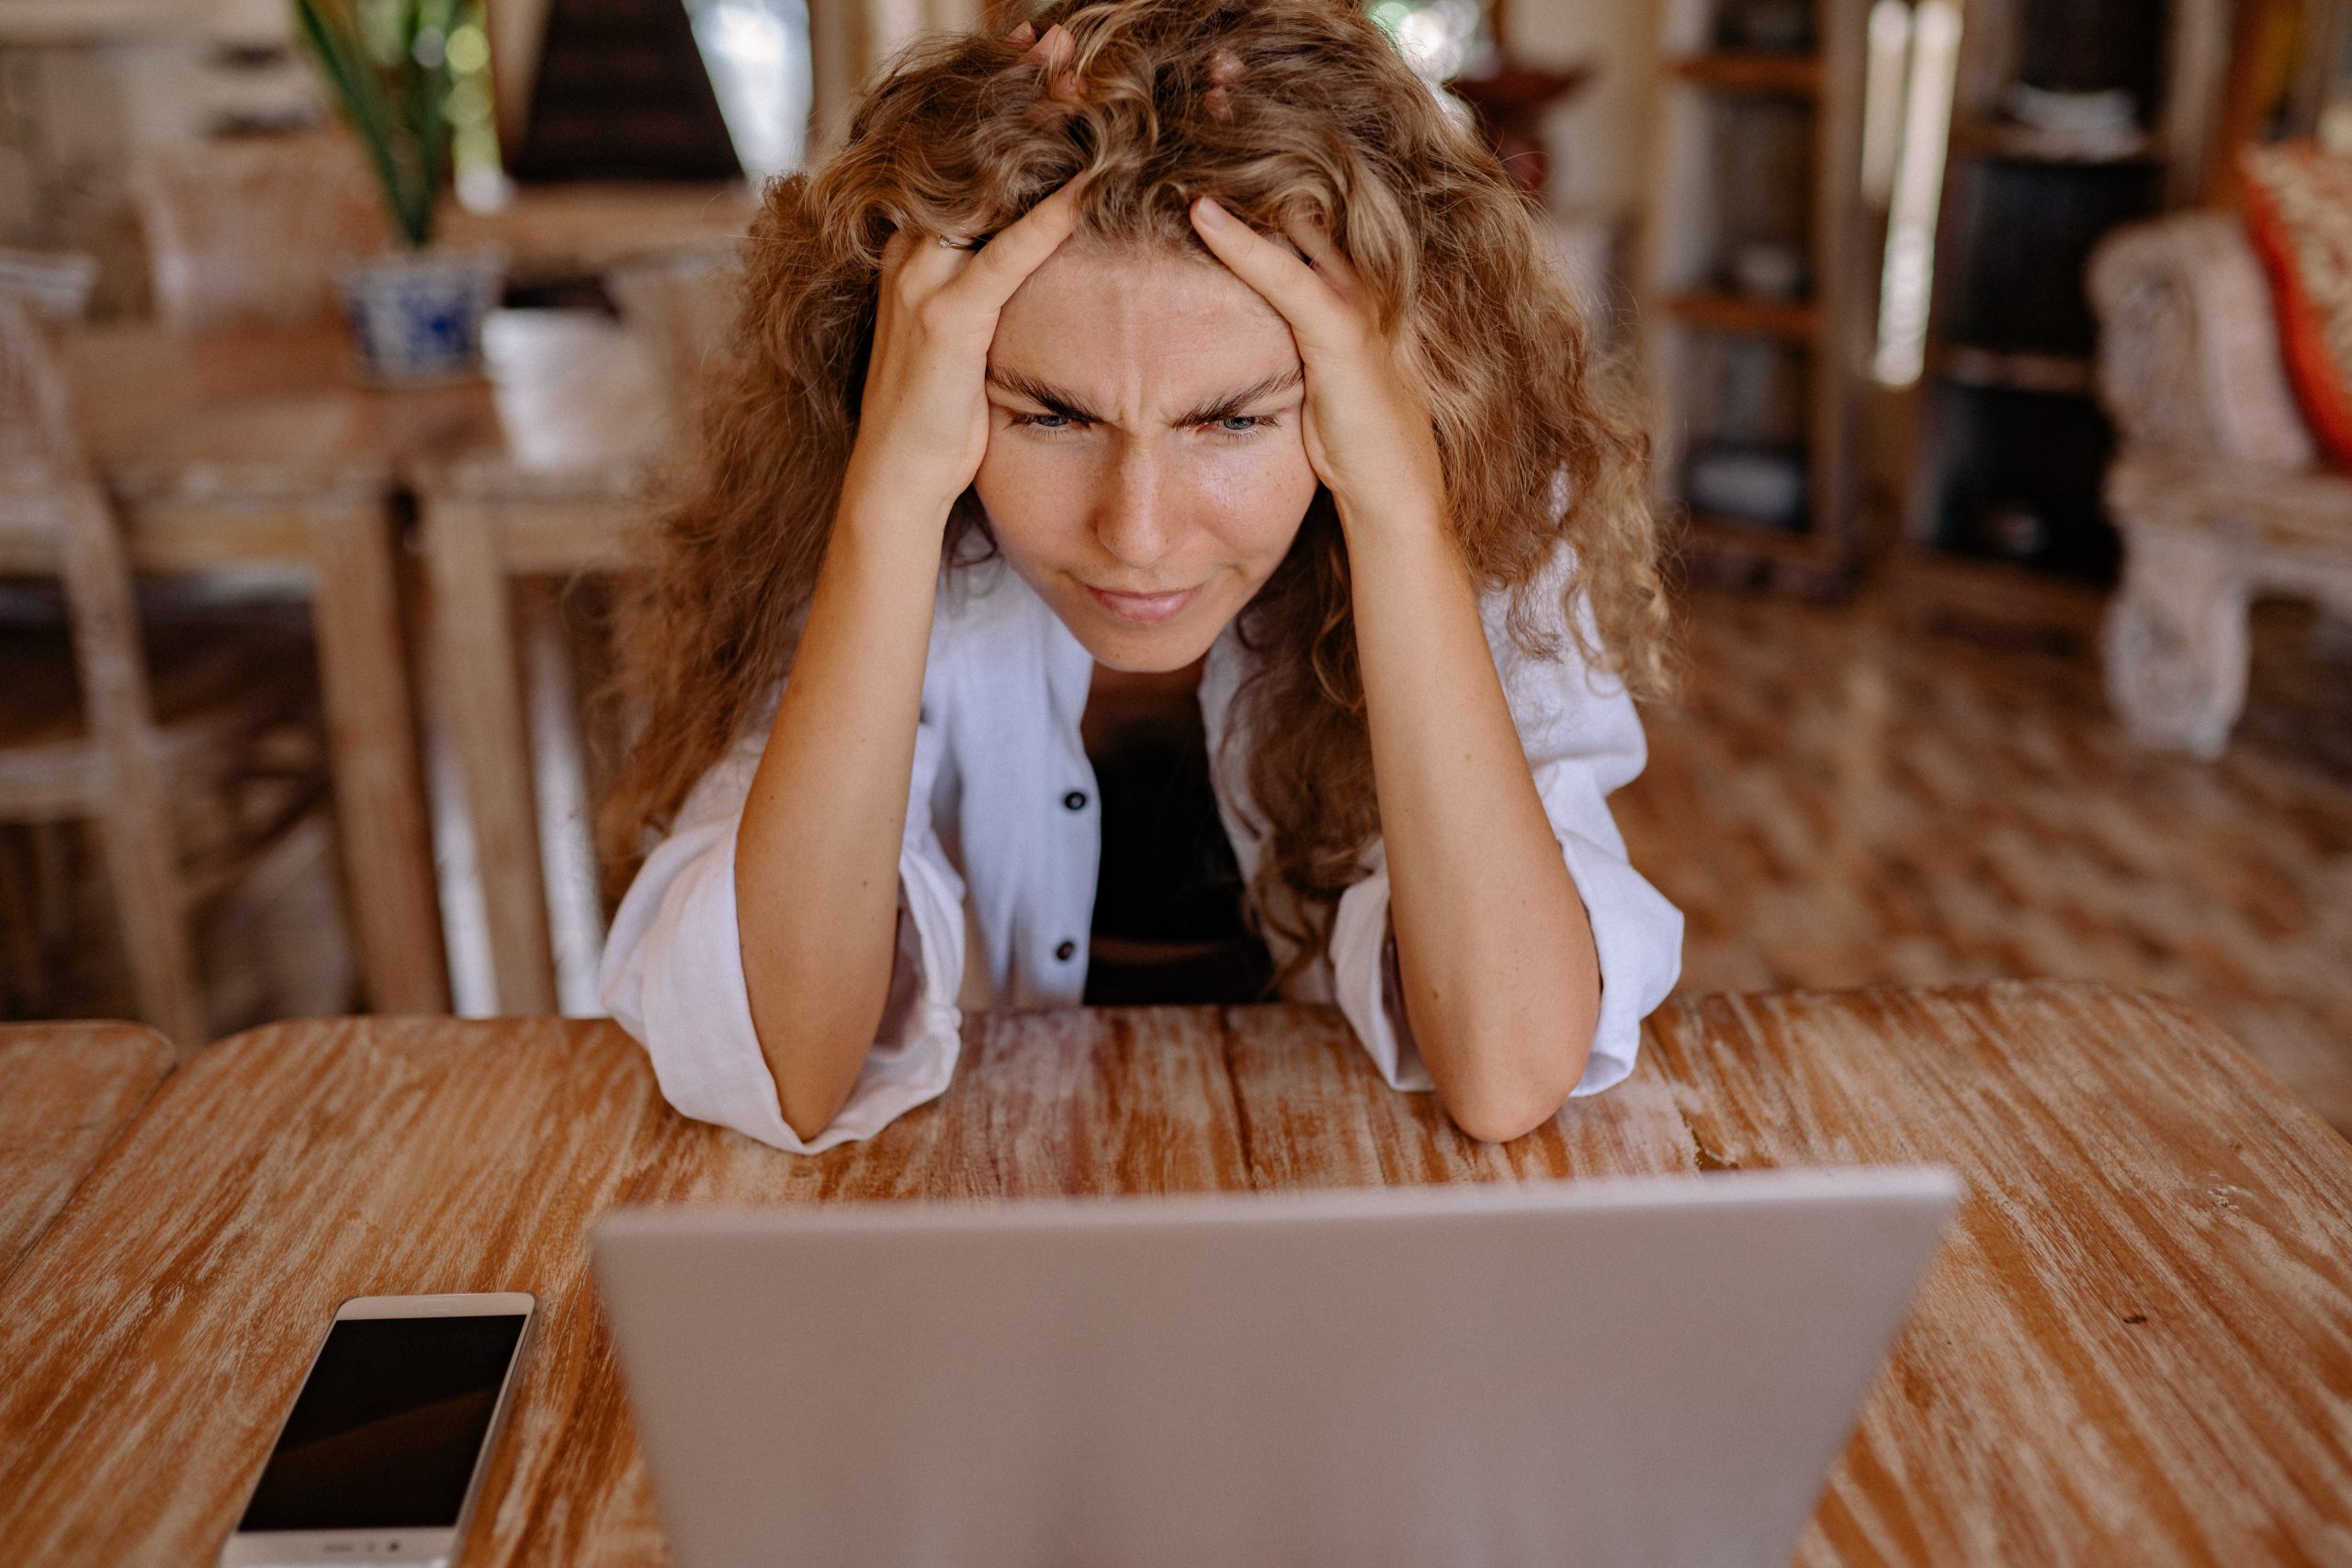 Frau sitzt vor Laptop und hat Kopfschmerzen. Machen hochfrequente Funkwellen krank?